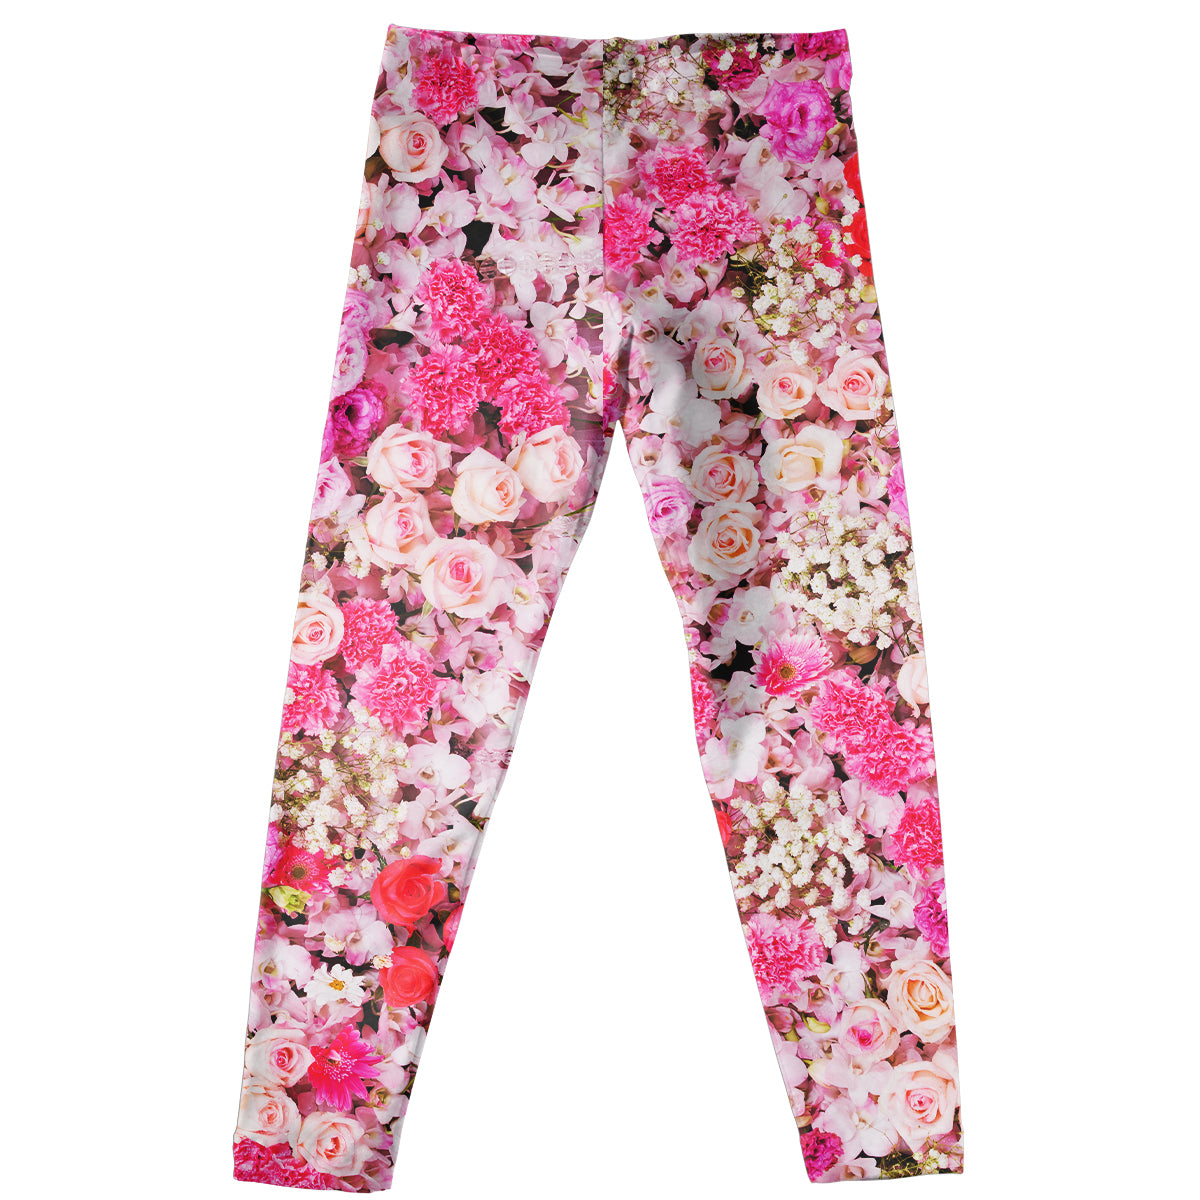 Floral Print Pink Leggings